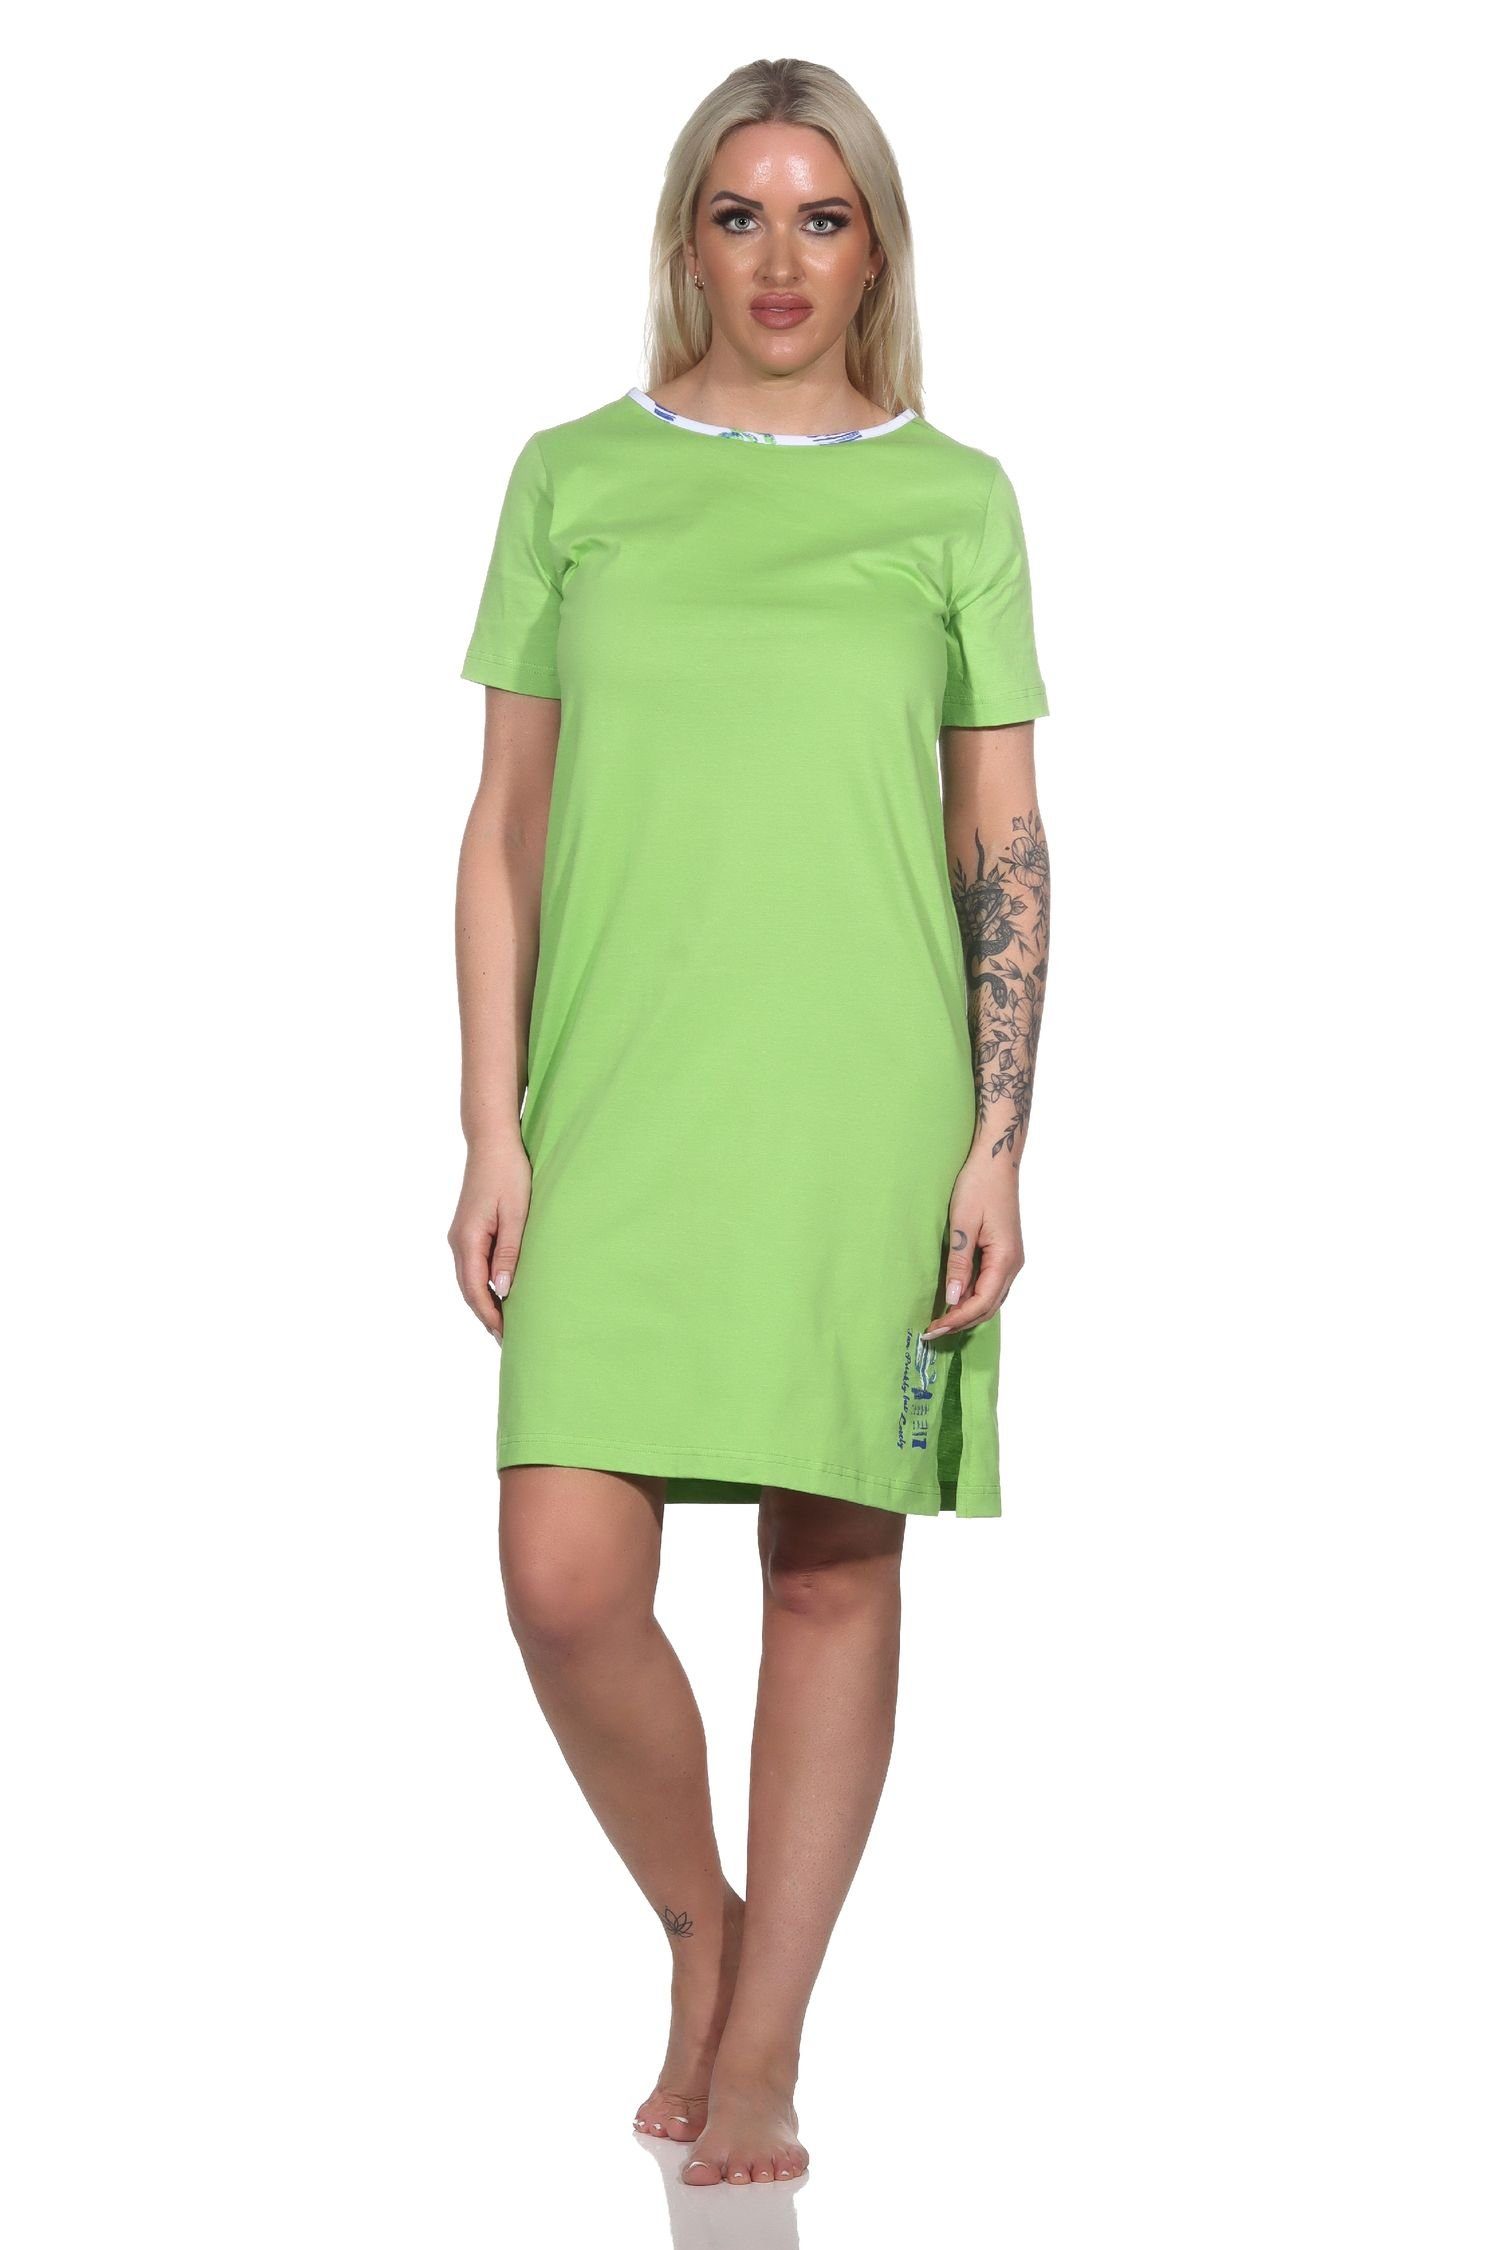 Normann Nachthemd Damen kurzarm Nachthemd grün mit als Kaktus Motiv